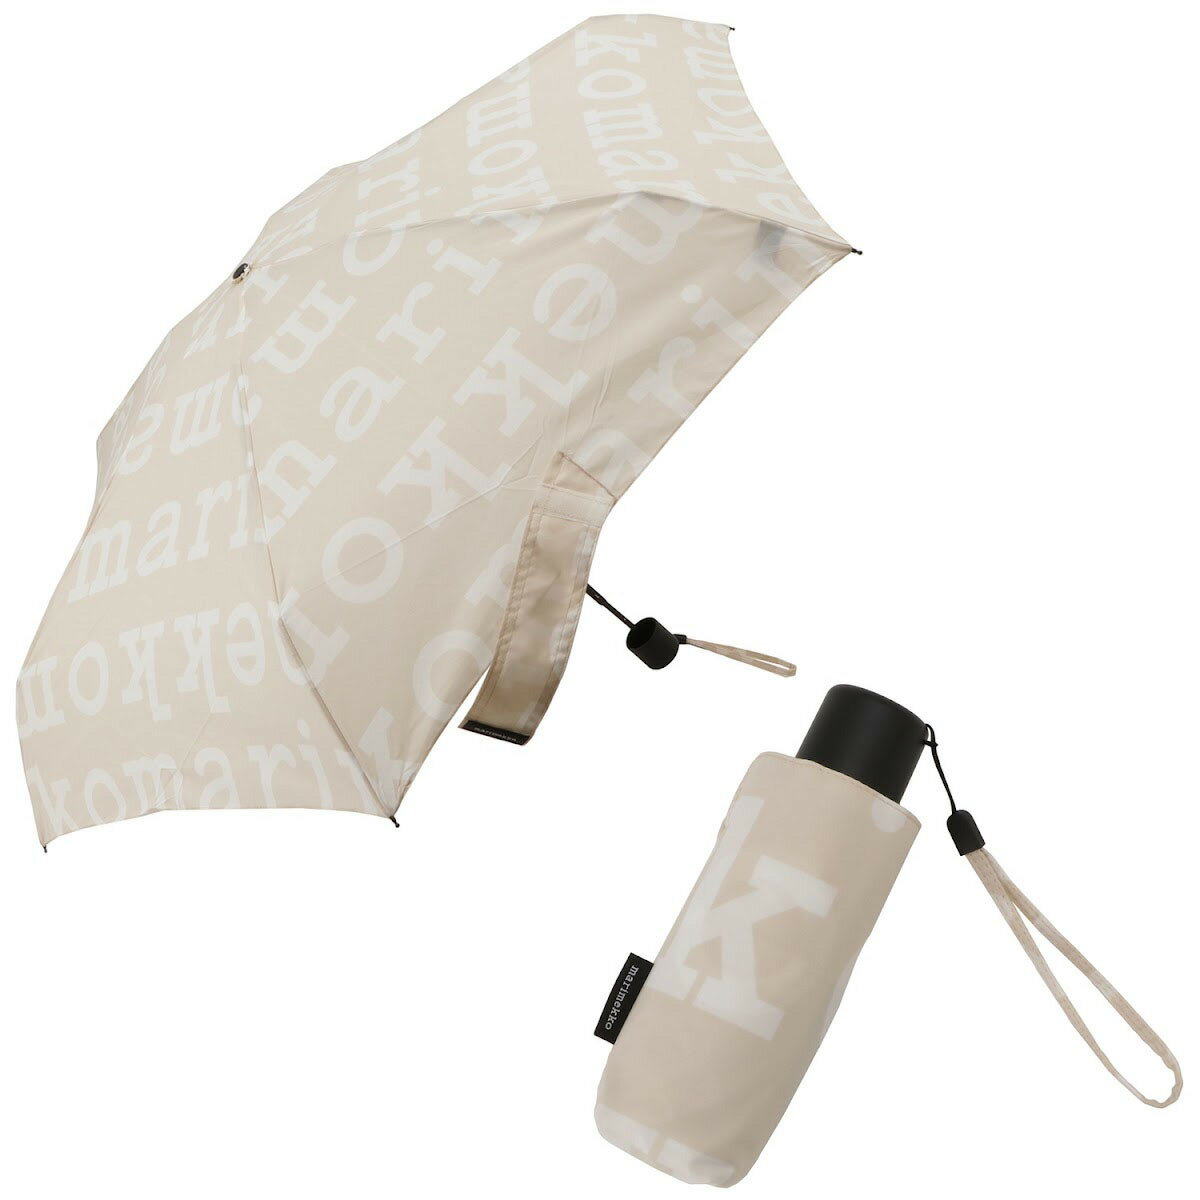 マリメッコ  マリメッコ marimekko 折りたたみ傘 傘 雨傘 折り畳み 049561 810 ummm00105l MINI MANUAL UMBRELLA ミニ マニュアル アンブレラ Marilogo ベージュ+オフホワイト系 北欧